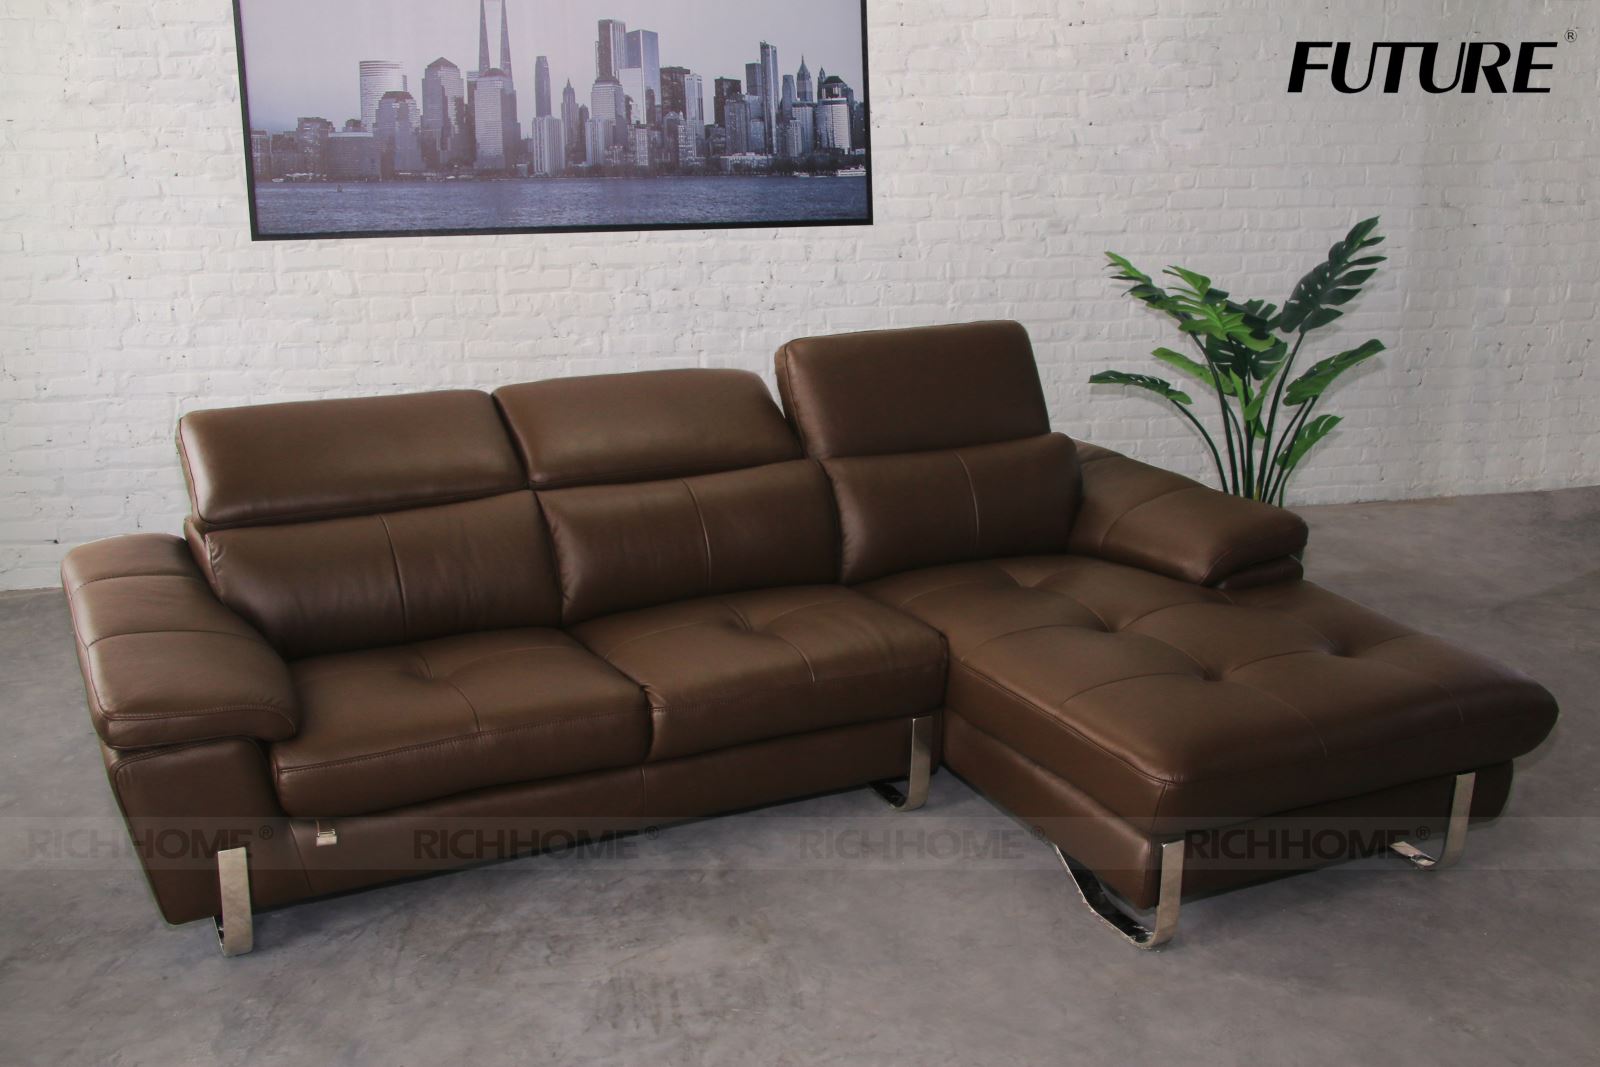 6 mẫu bàn ghế sofa góc nhập khẩu bán chạy nhất hiện nay - Ảnh 3